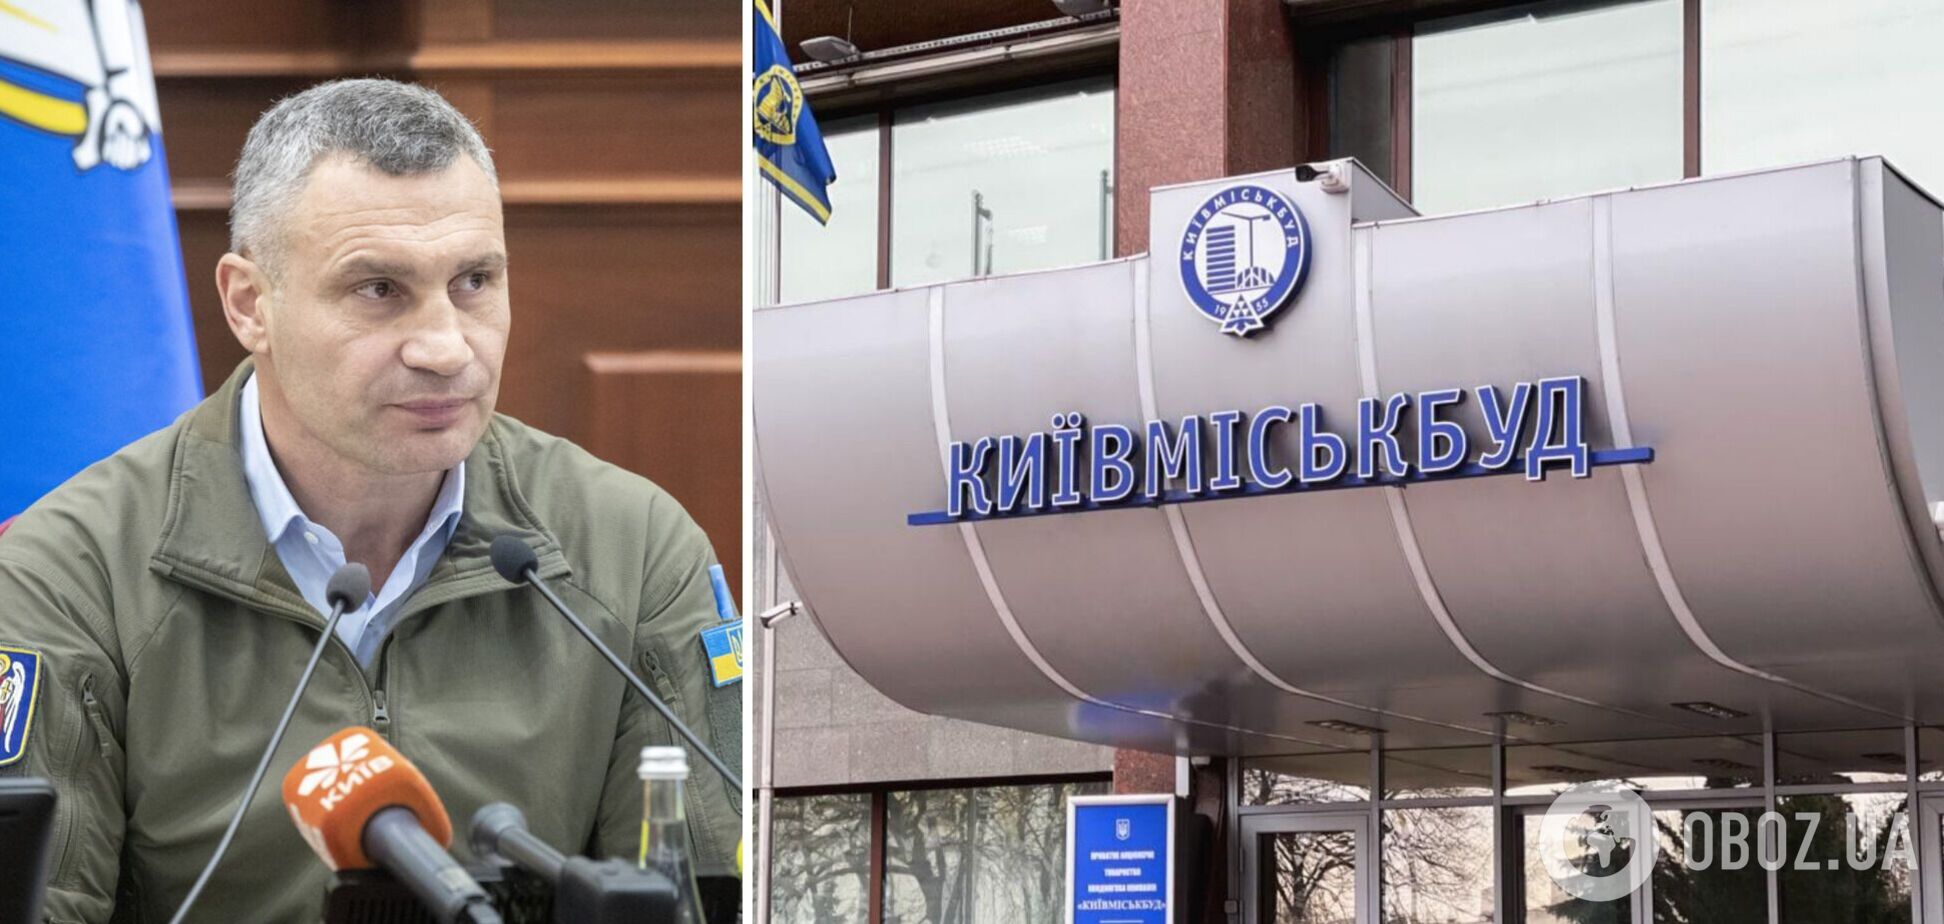 Кличко поручил сформировать новый наблюдательный совет и правление 'Київміськбуду'